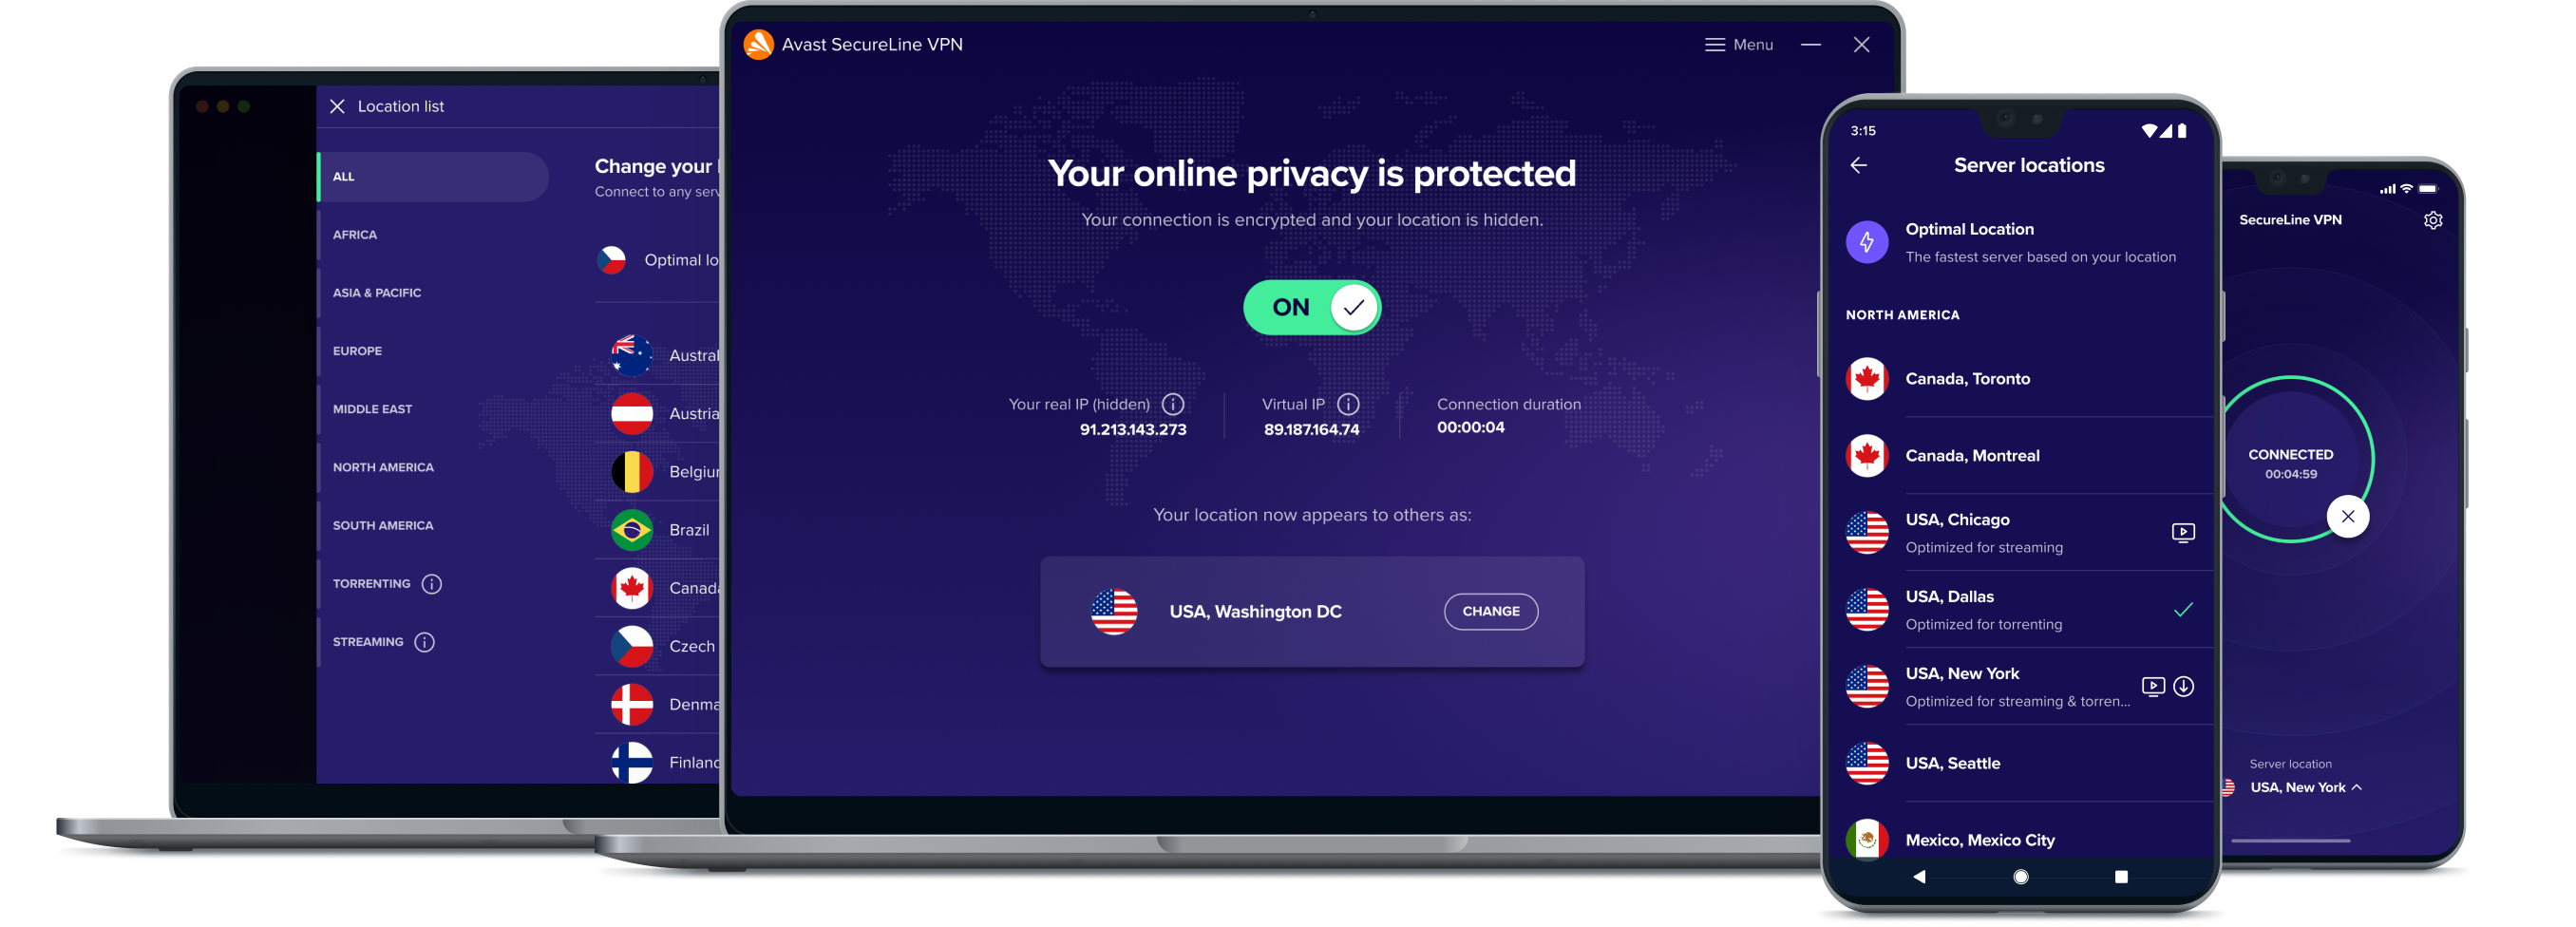 Obtenha maior liberdade online com o nosso serviço de VPN